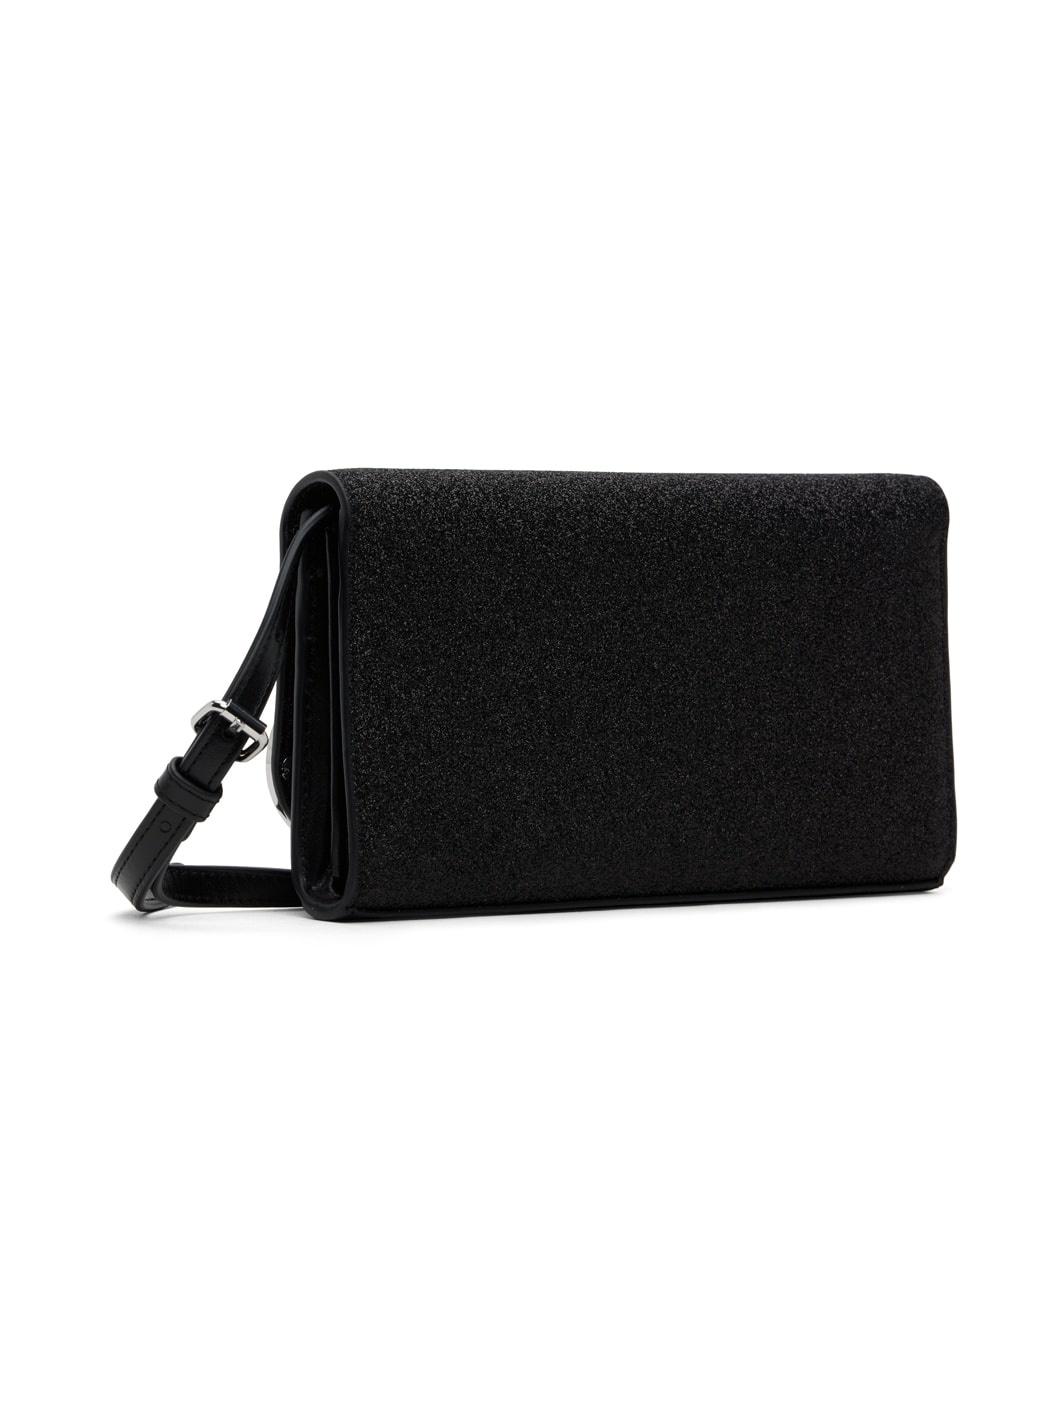 Black 1dr Wallet Strap Bag - 3